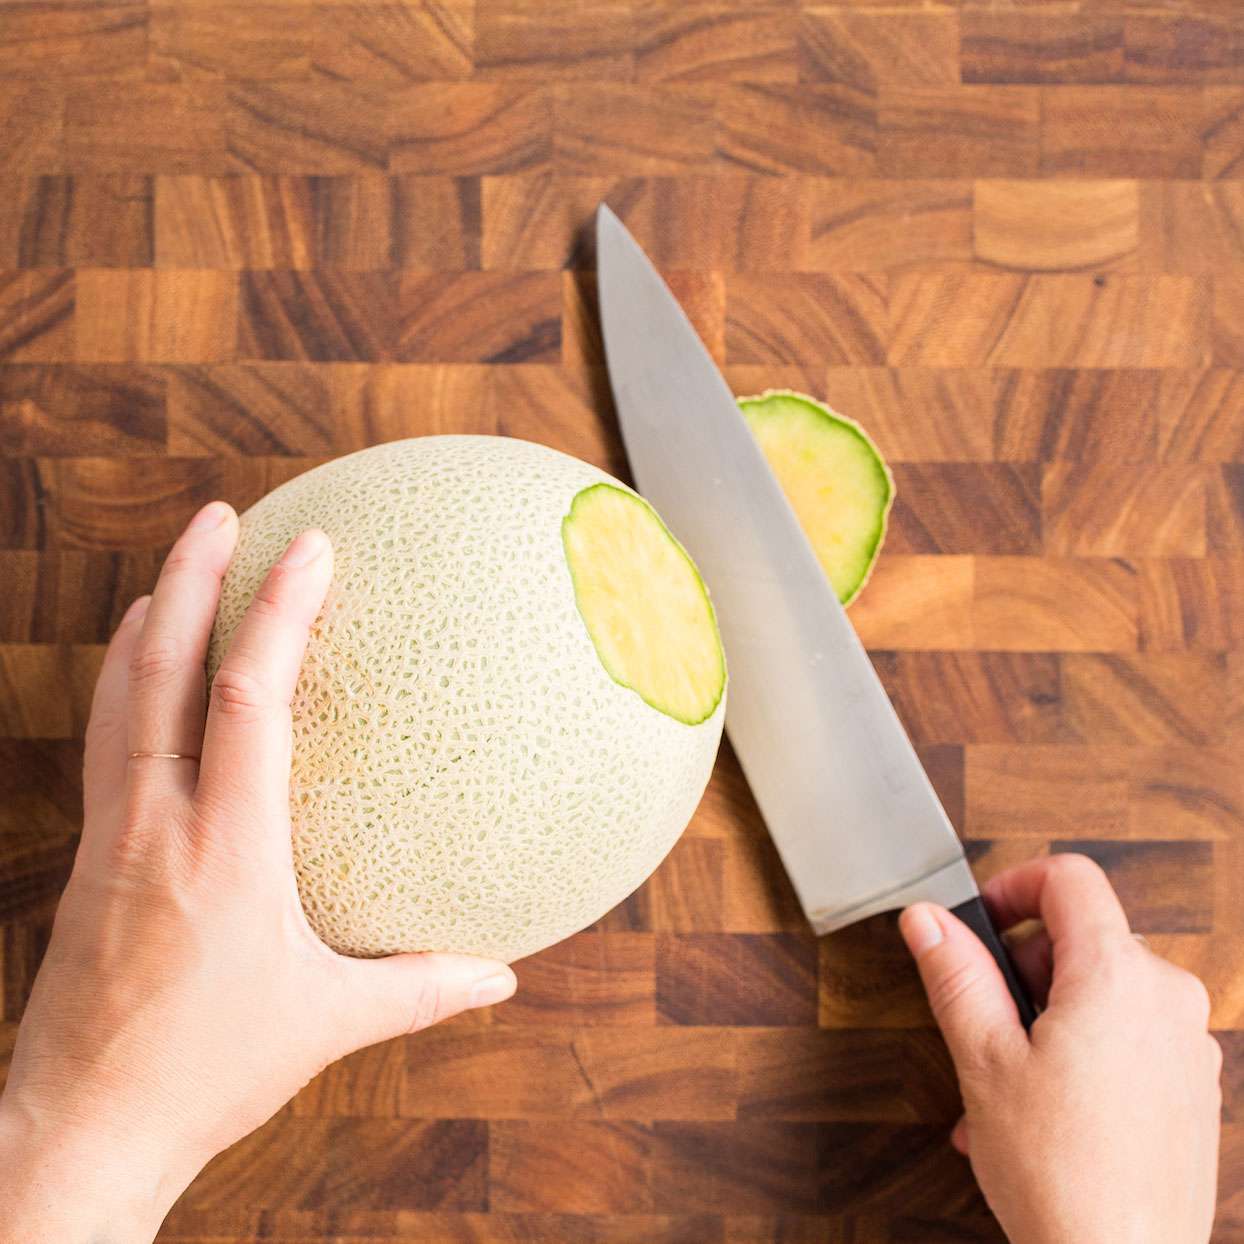 Cuchillo que corta la parte superior del melón en un tablero de madera